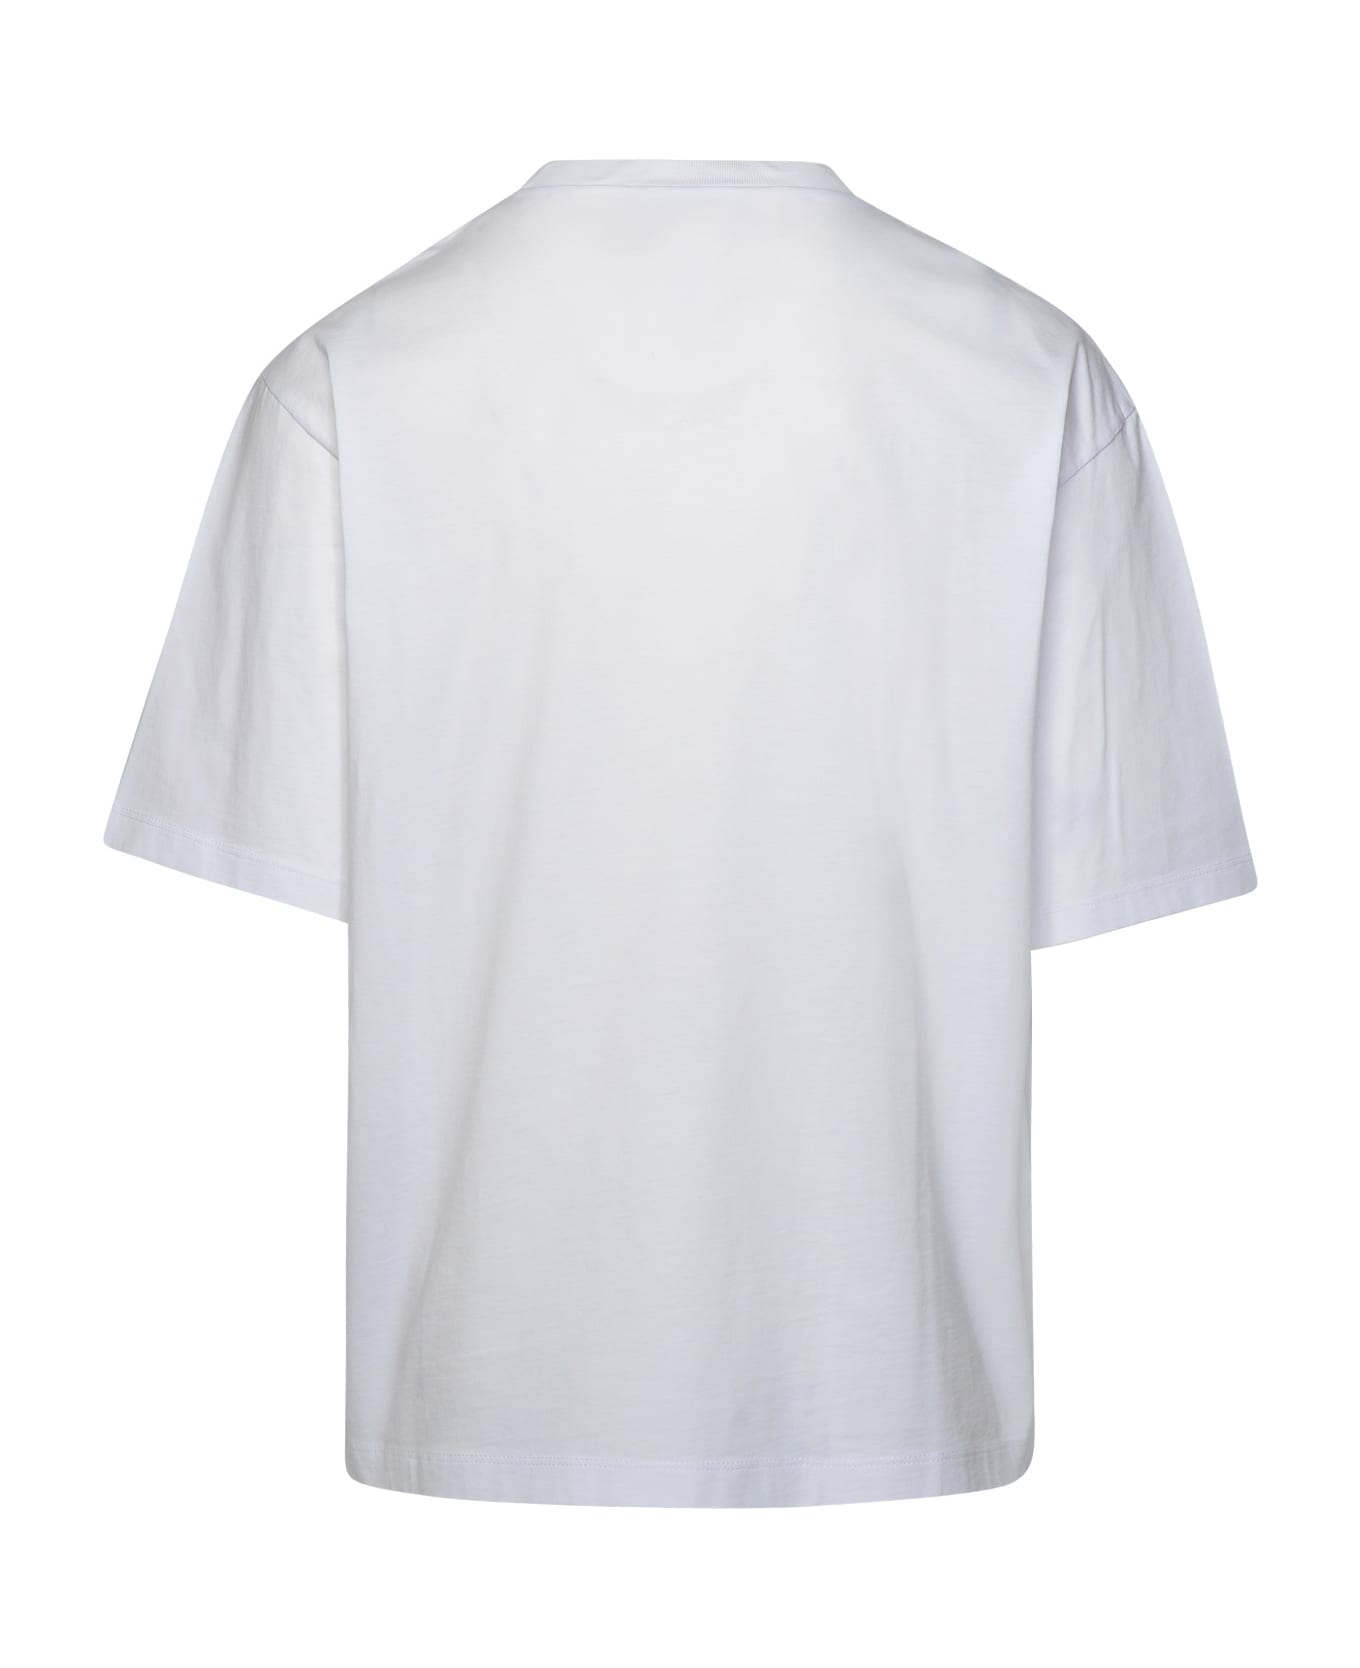 Dsquared2 Logo T-shirt - White